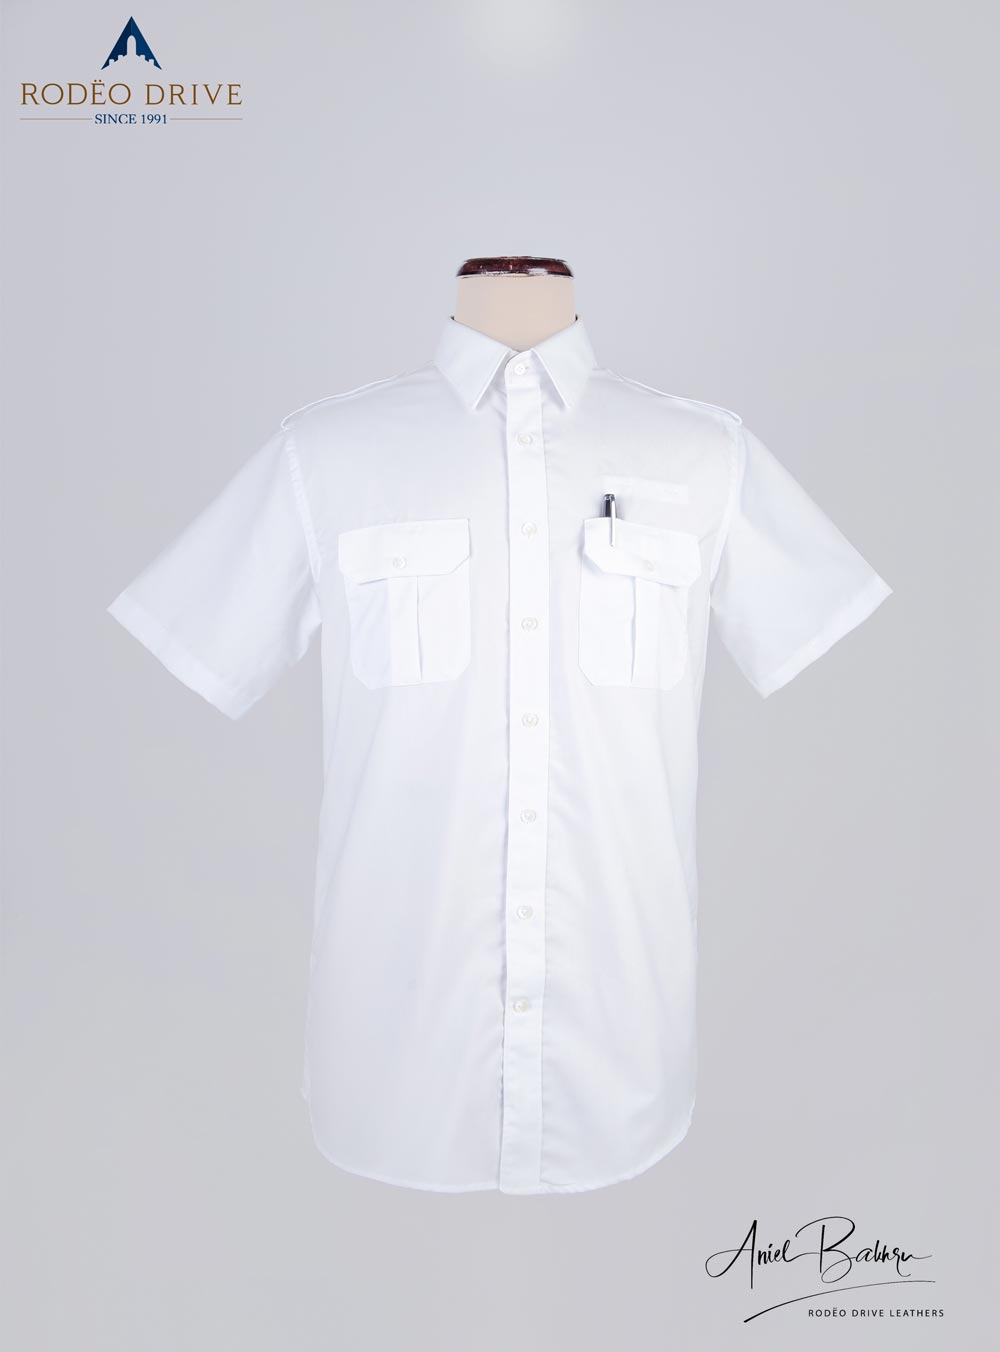 FEDEX Standard size Pilot Shirt for Men